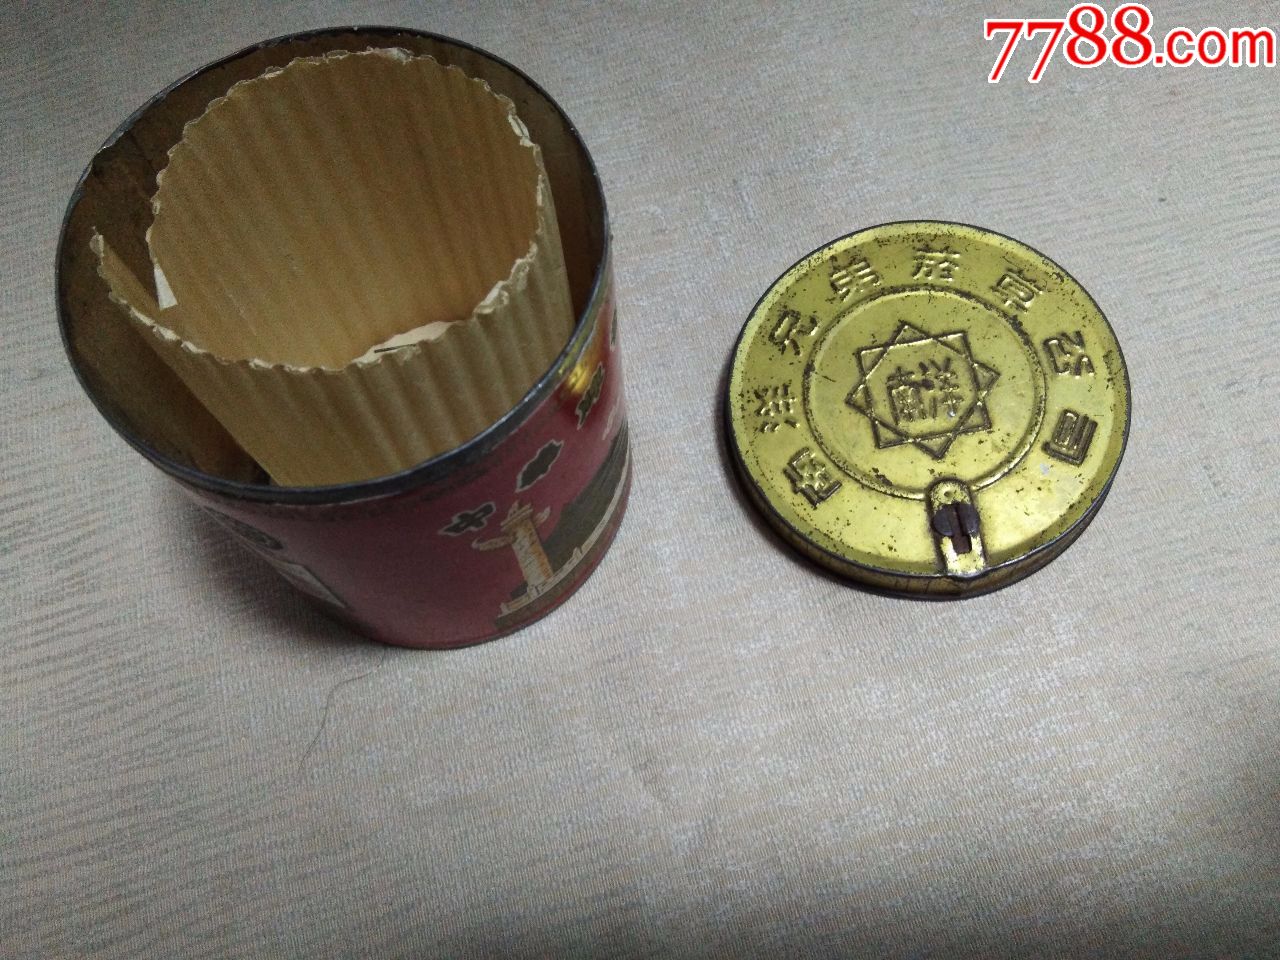 上海卷烟厂出品中华牌五十支装圆筒铁烟盒,盖上有字:南洋兄弟烟草公司